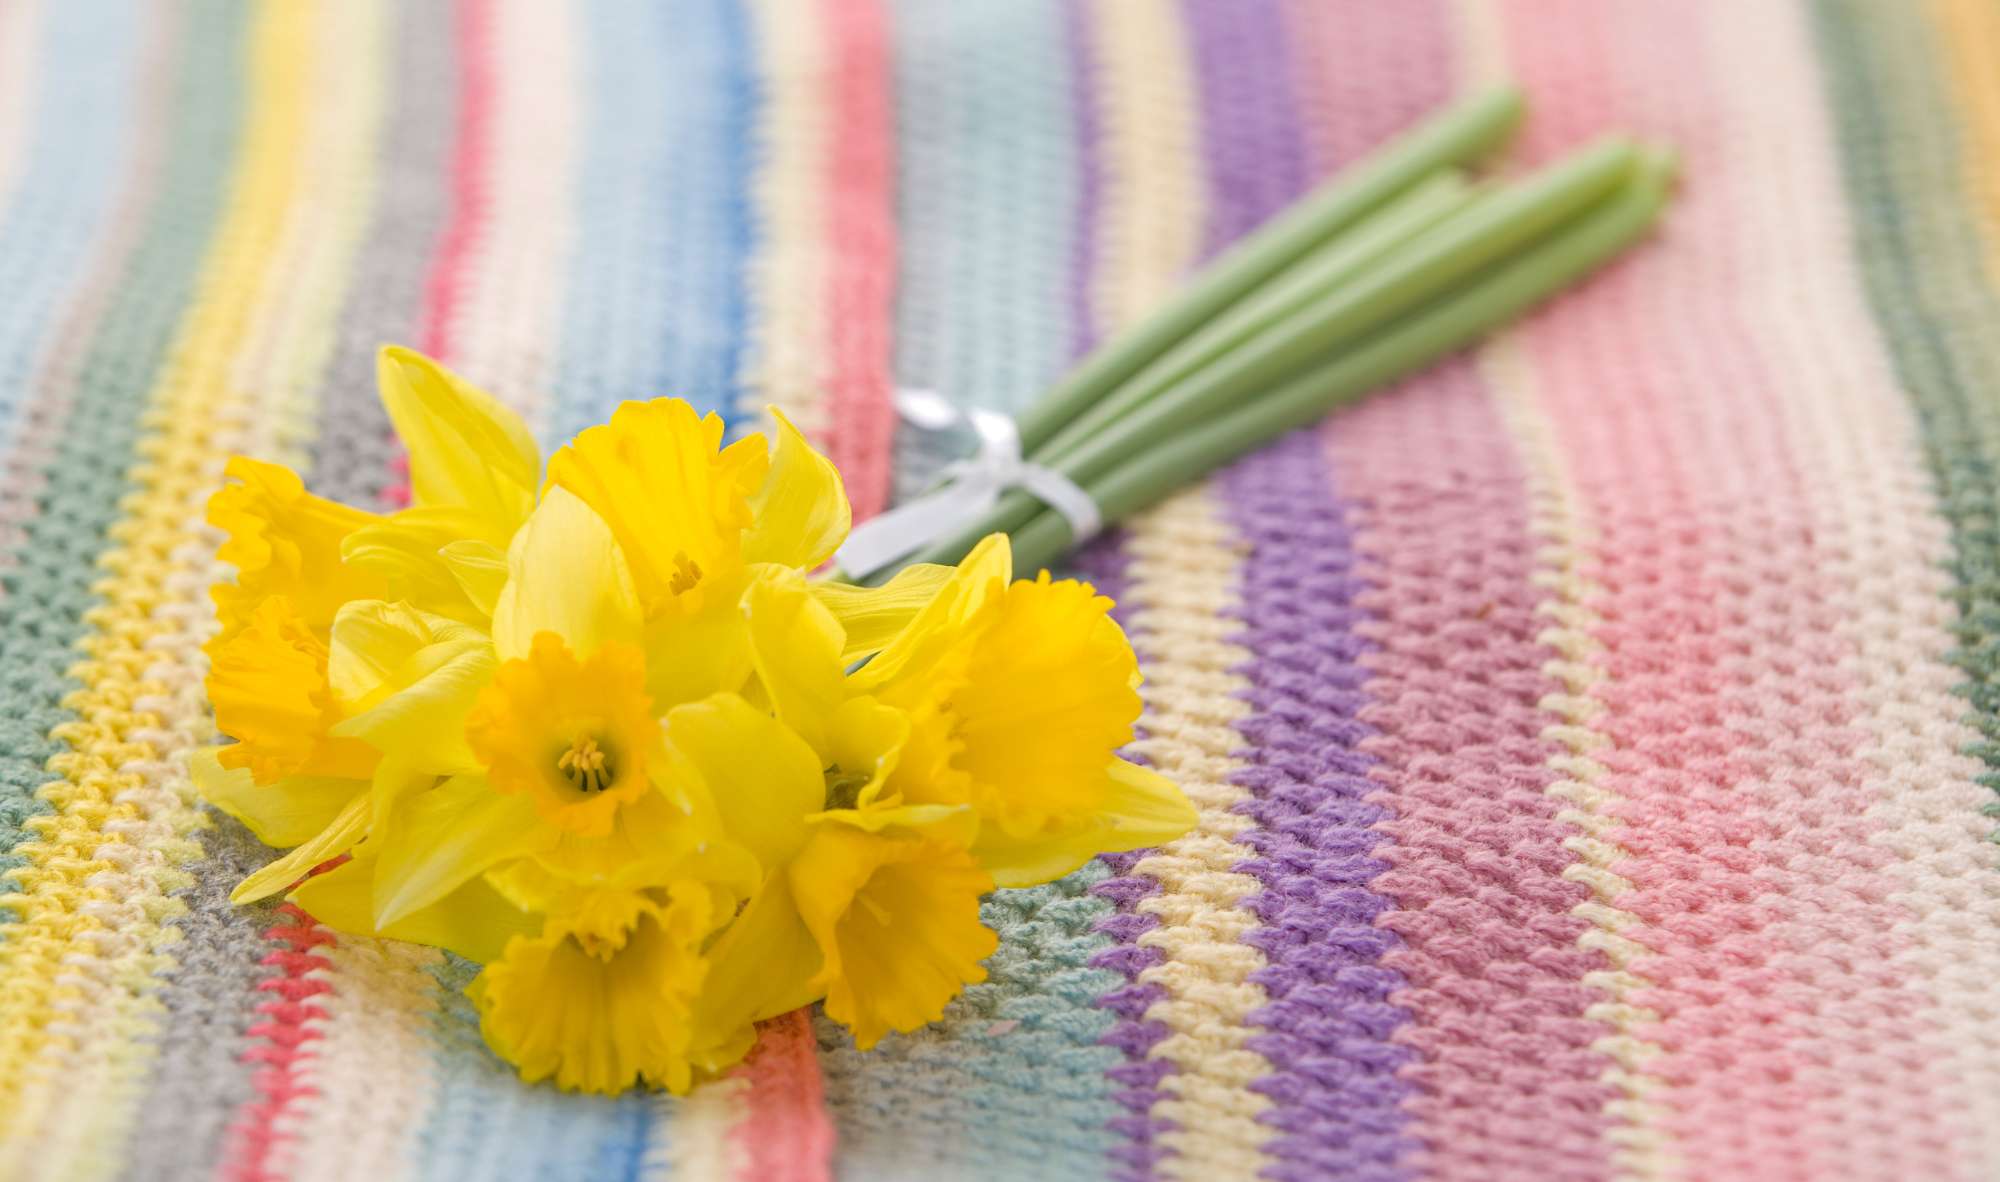 Gifting daffodils